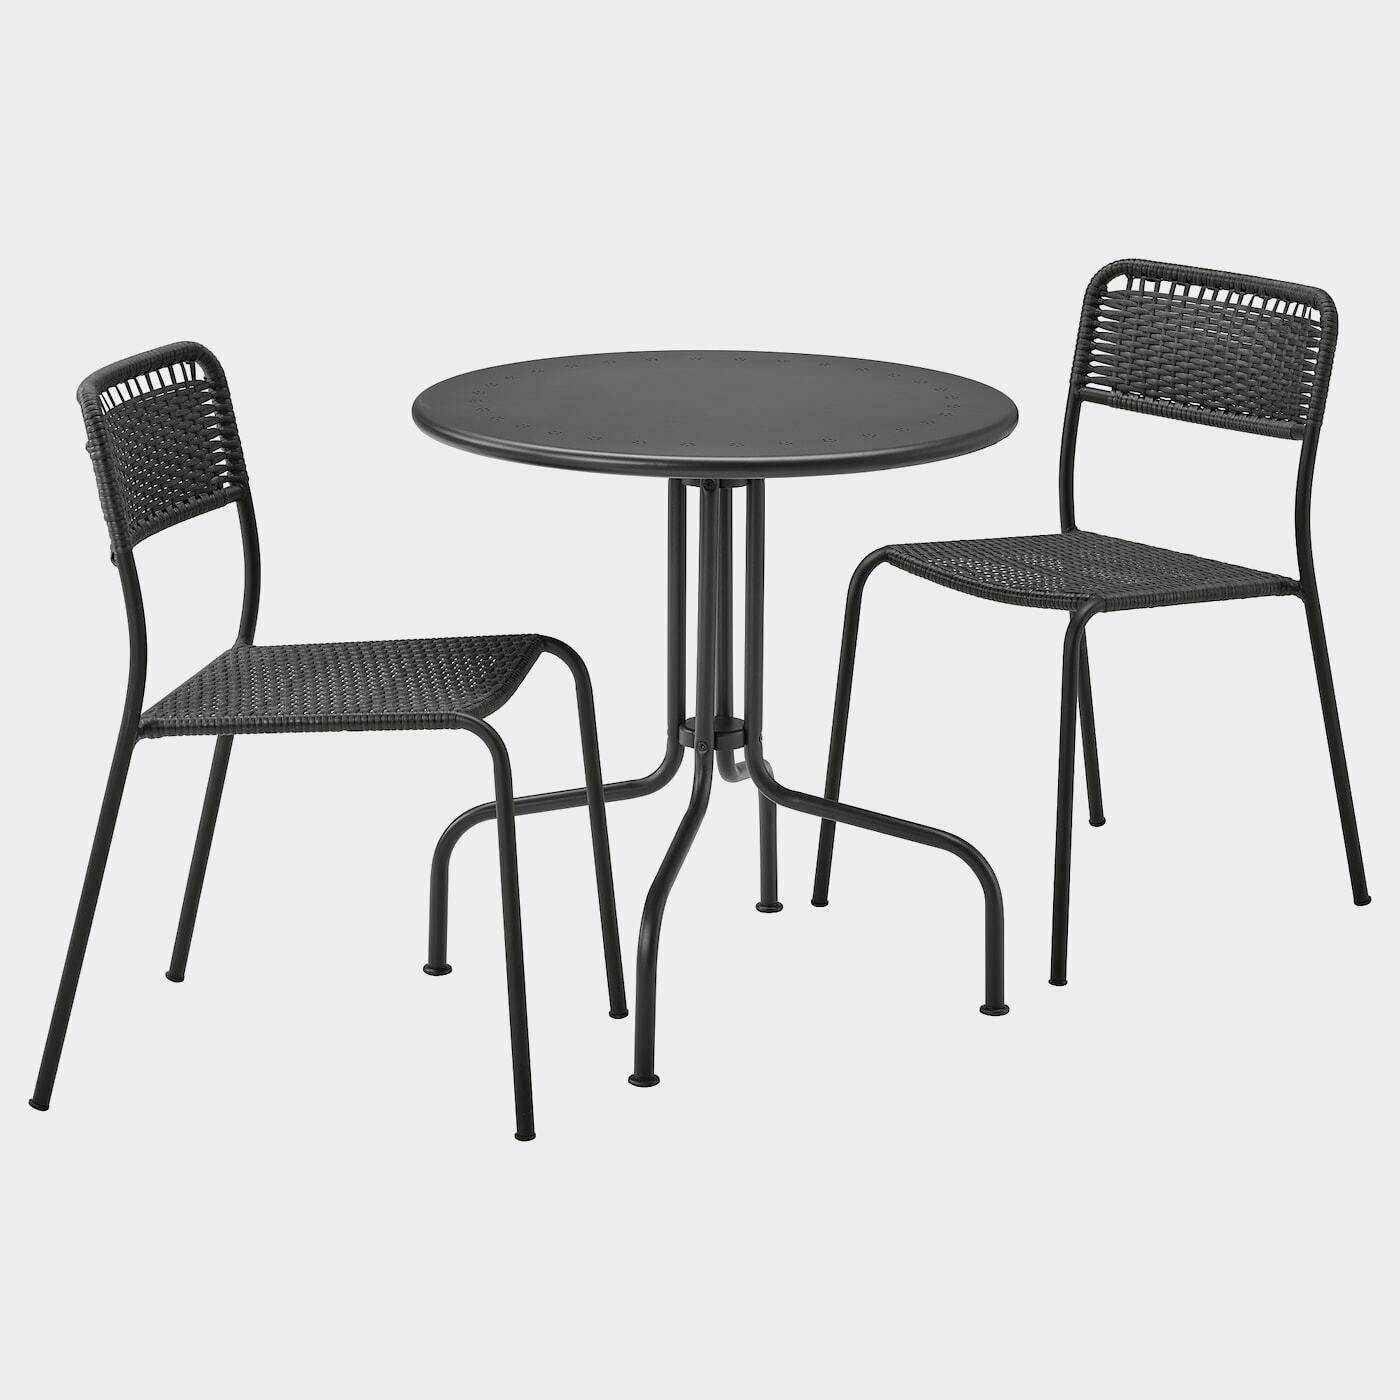 LÄCKÖ / VIHOLMEN Tisch+2 Stühle/außen  -  - Möbel Ideen für dein Zuhause von Home Trends. Möbel Trends von Social Media Influencer für dein Skandi Zuhause.